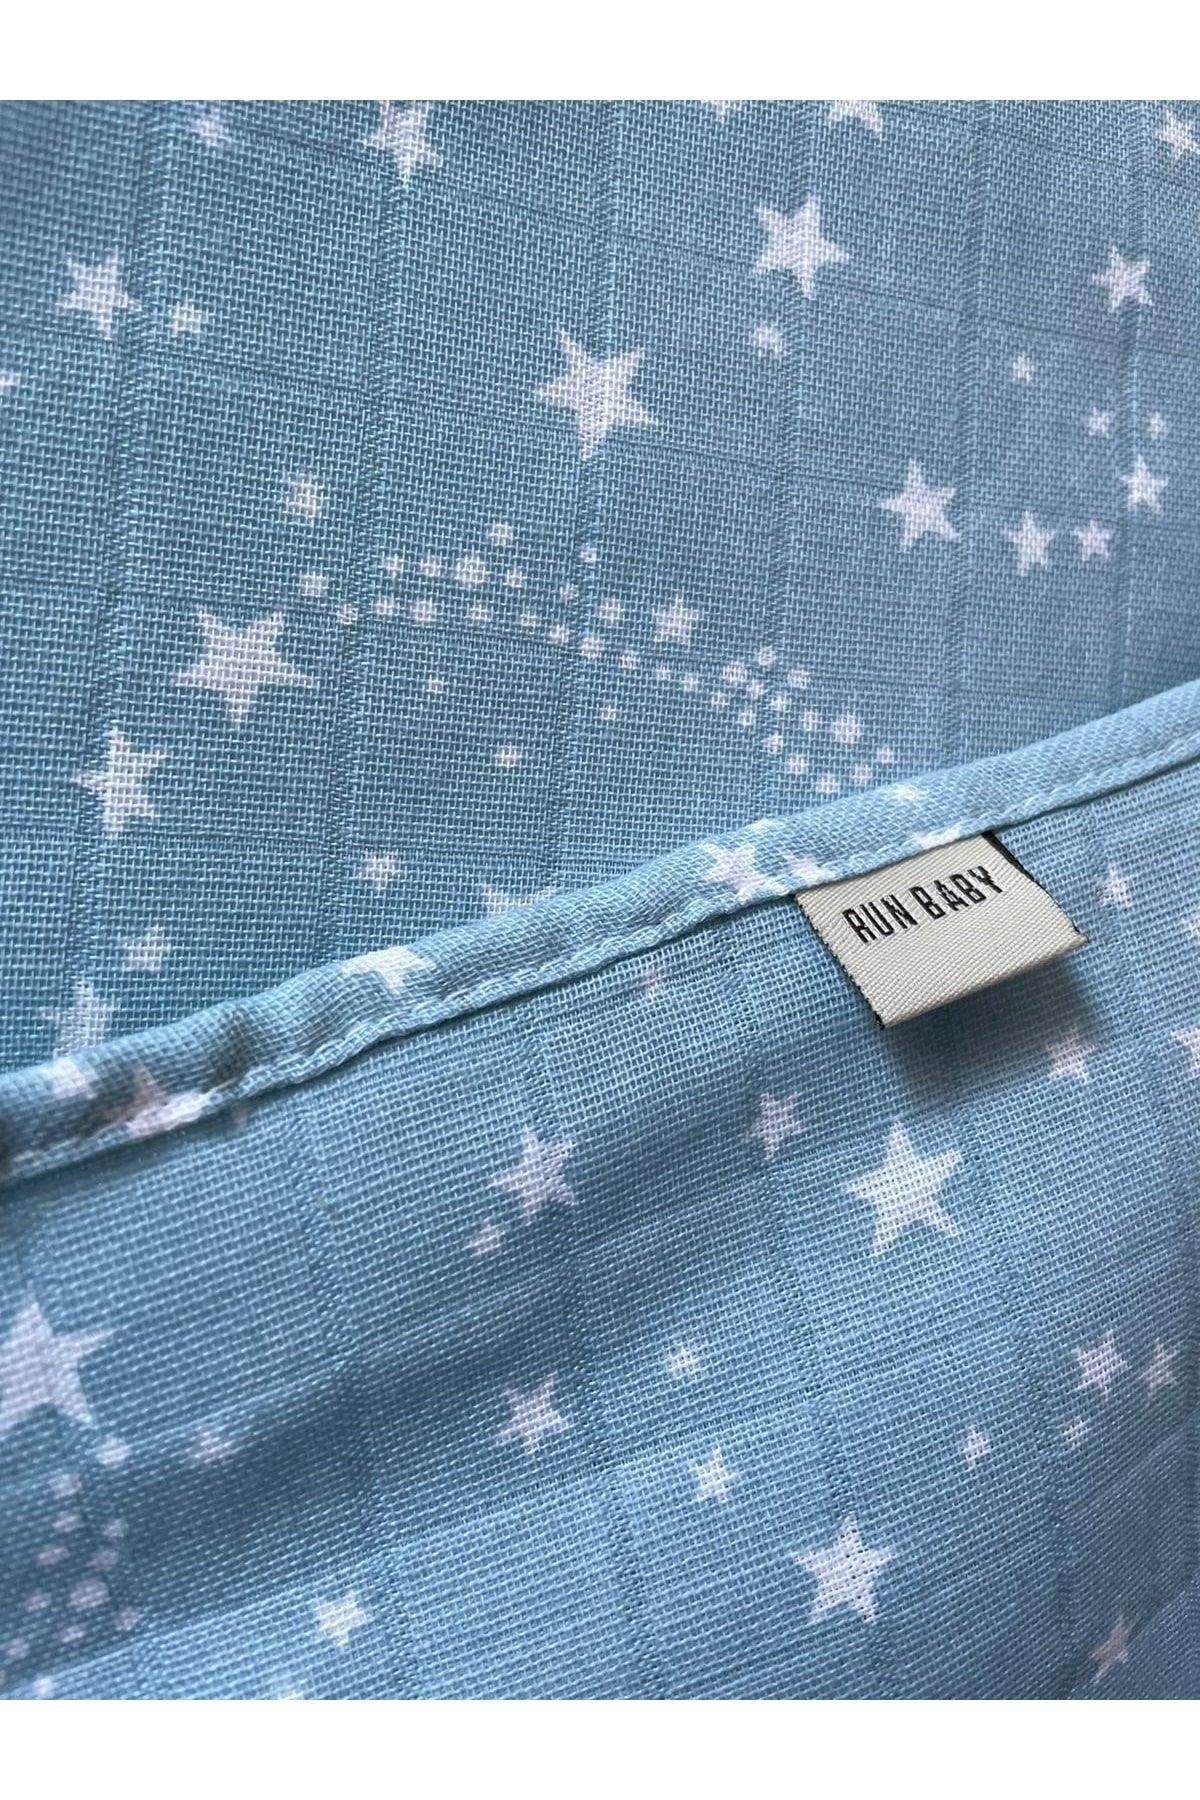 Muslin Baby Swaddle & Bathrobe Oeko-tex Certified 75x75cm Light Blue Star Pattern 100% Cotton - Swordslife